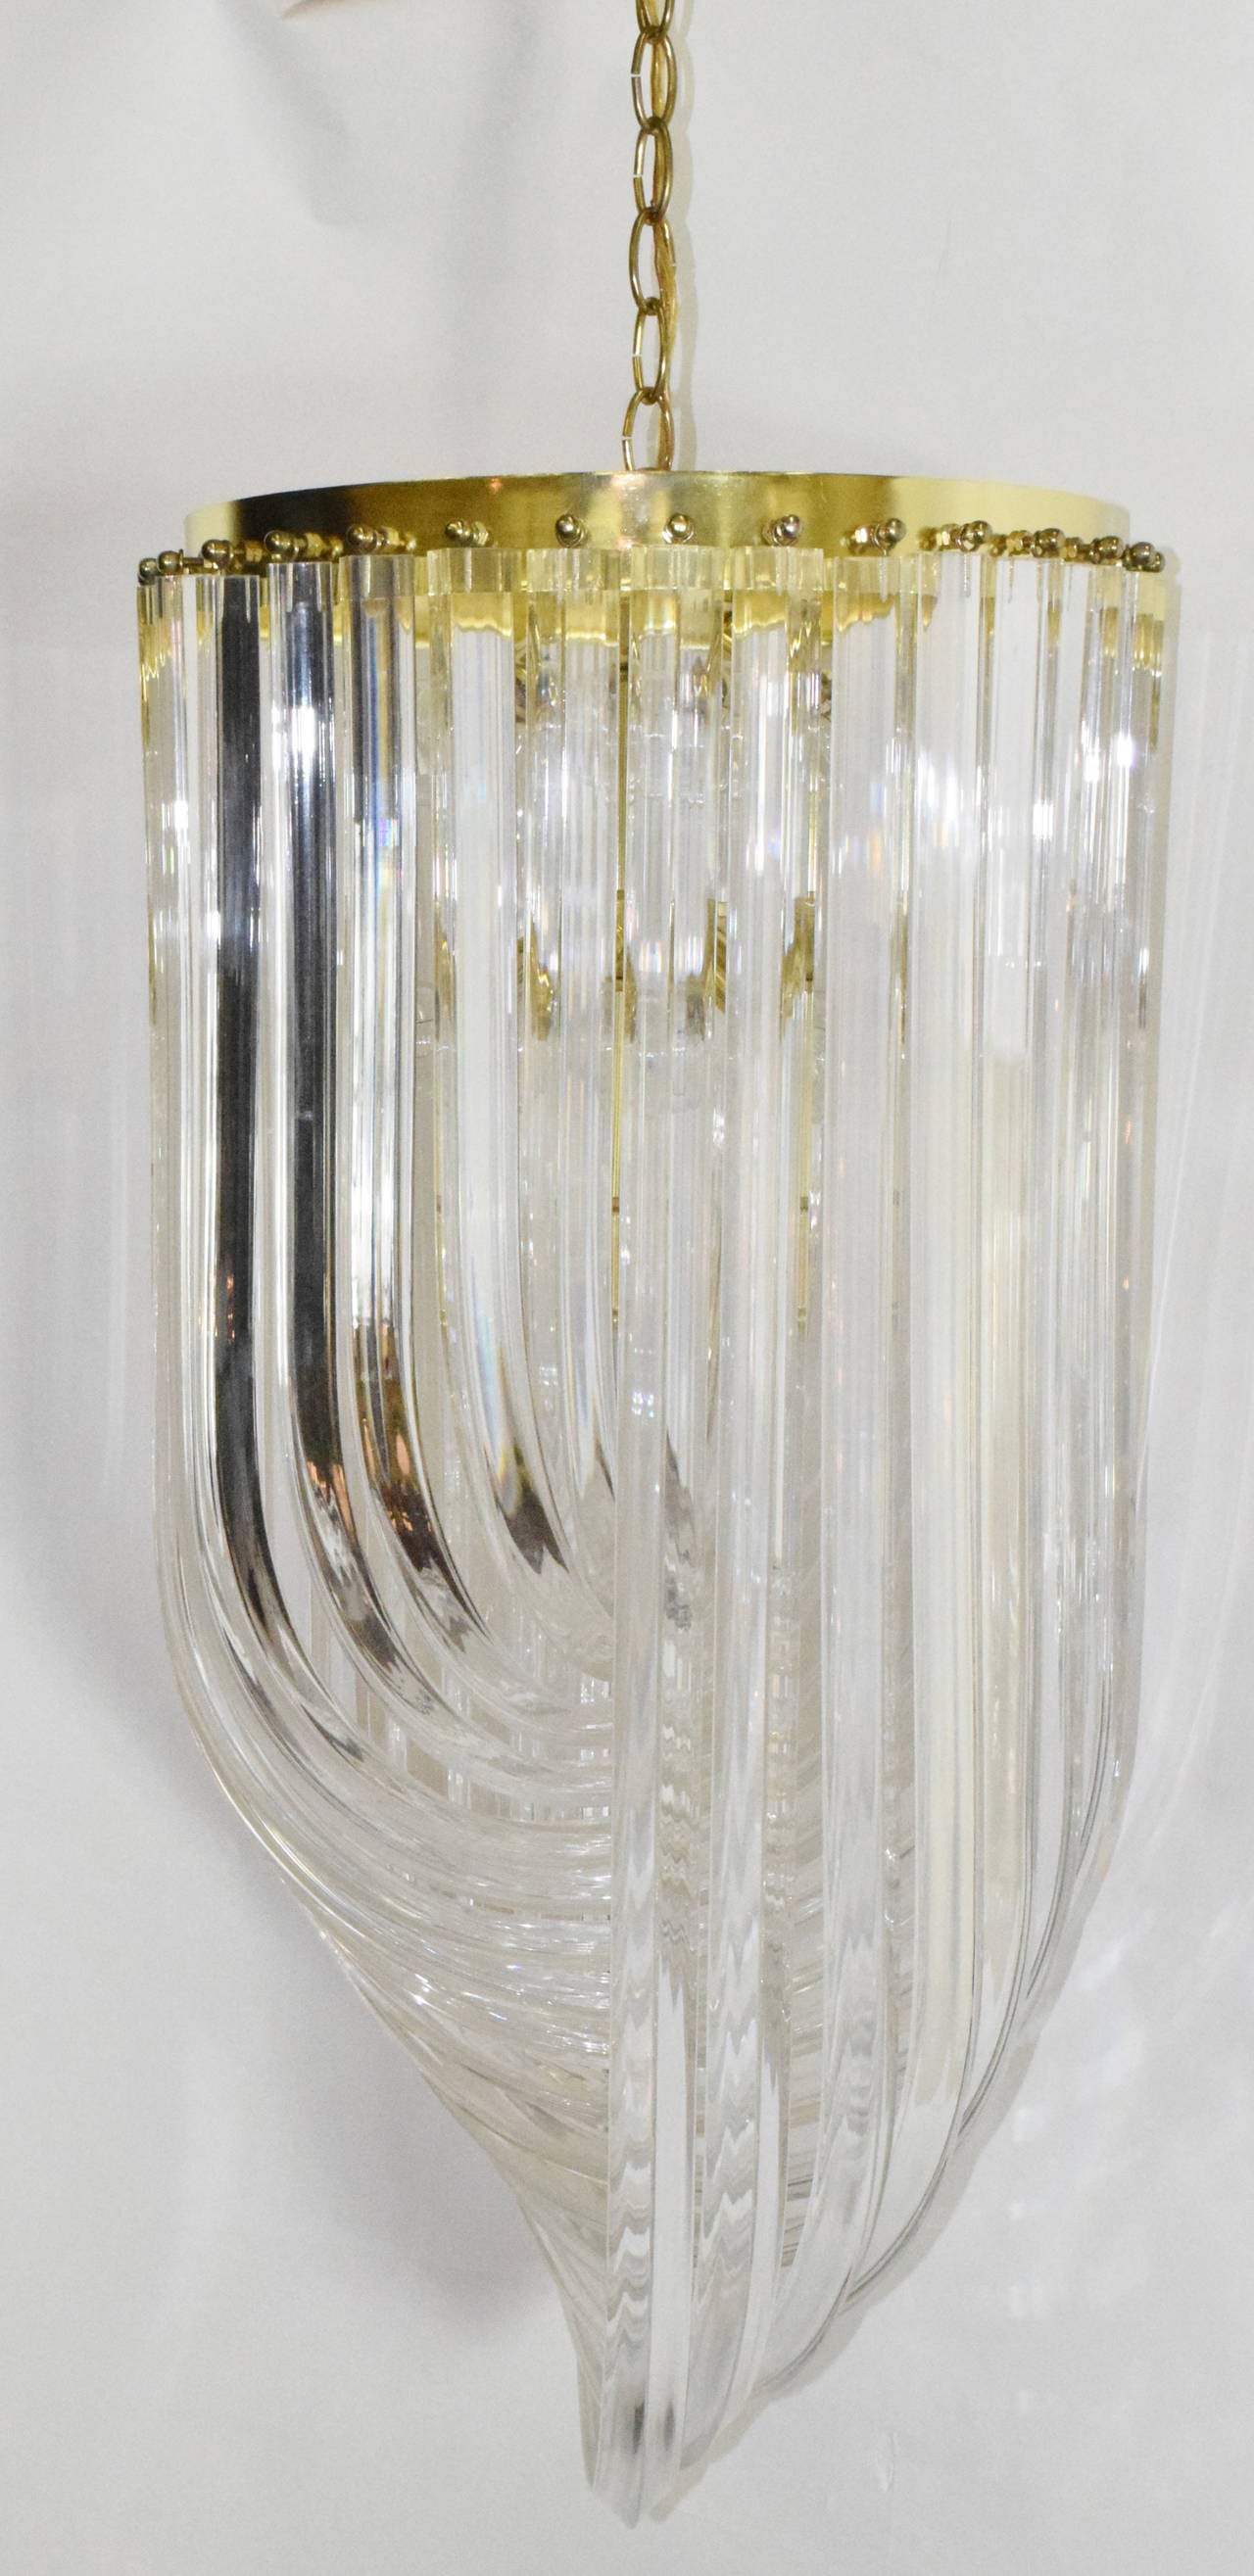 Il s'agit d'un magnifique lustre haut avec une tige en laiton et des bandes de lucite graduées. Comprend des douilles pour 12 ampoules. 1960s